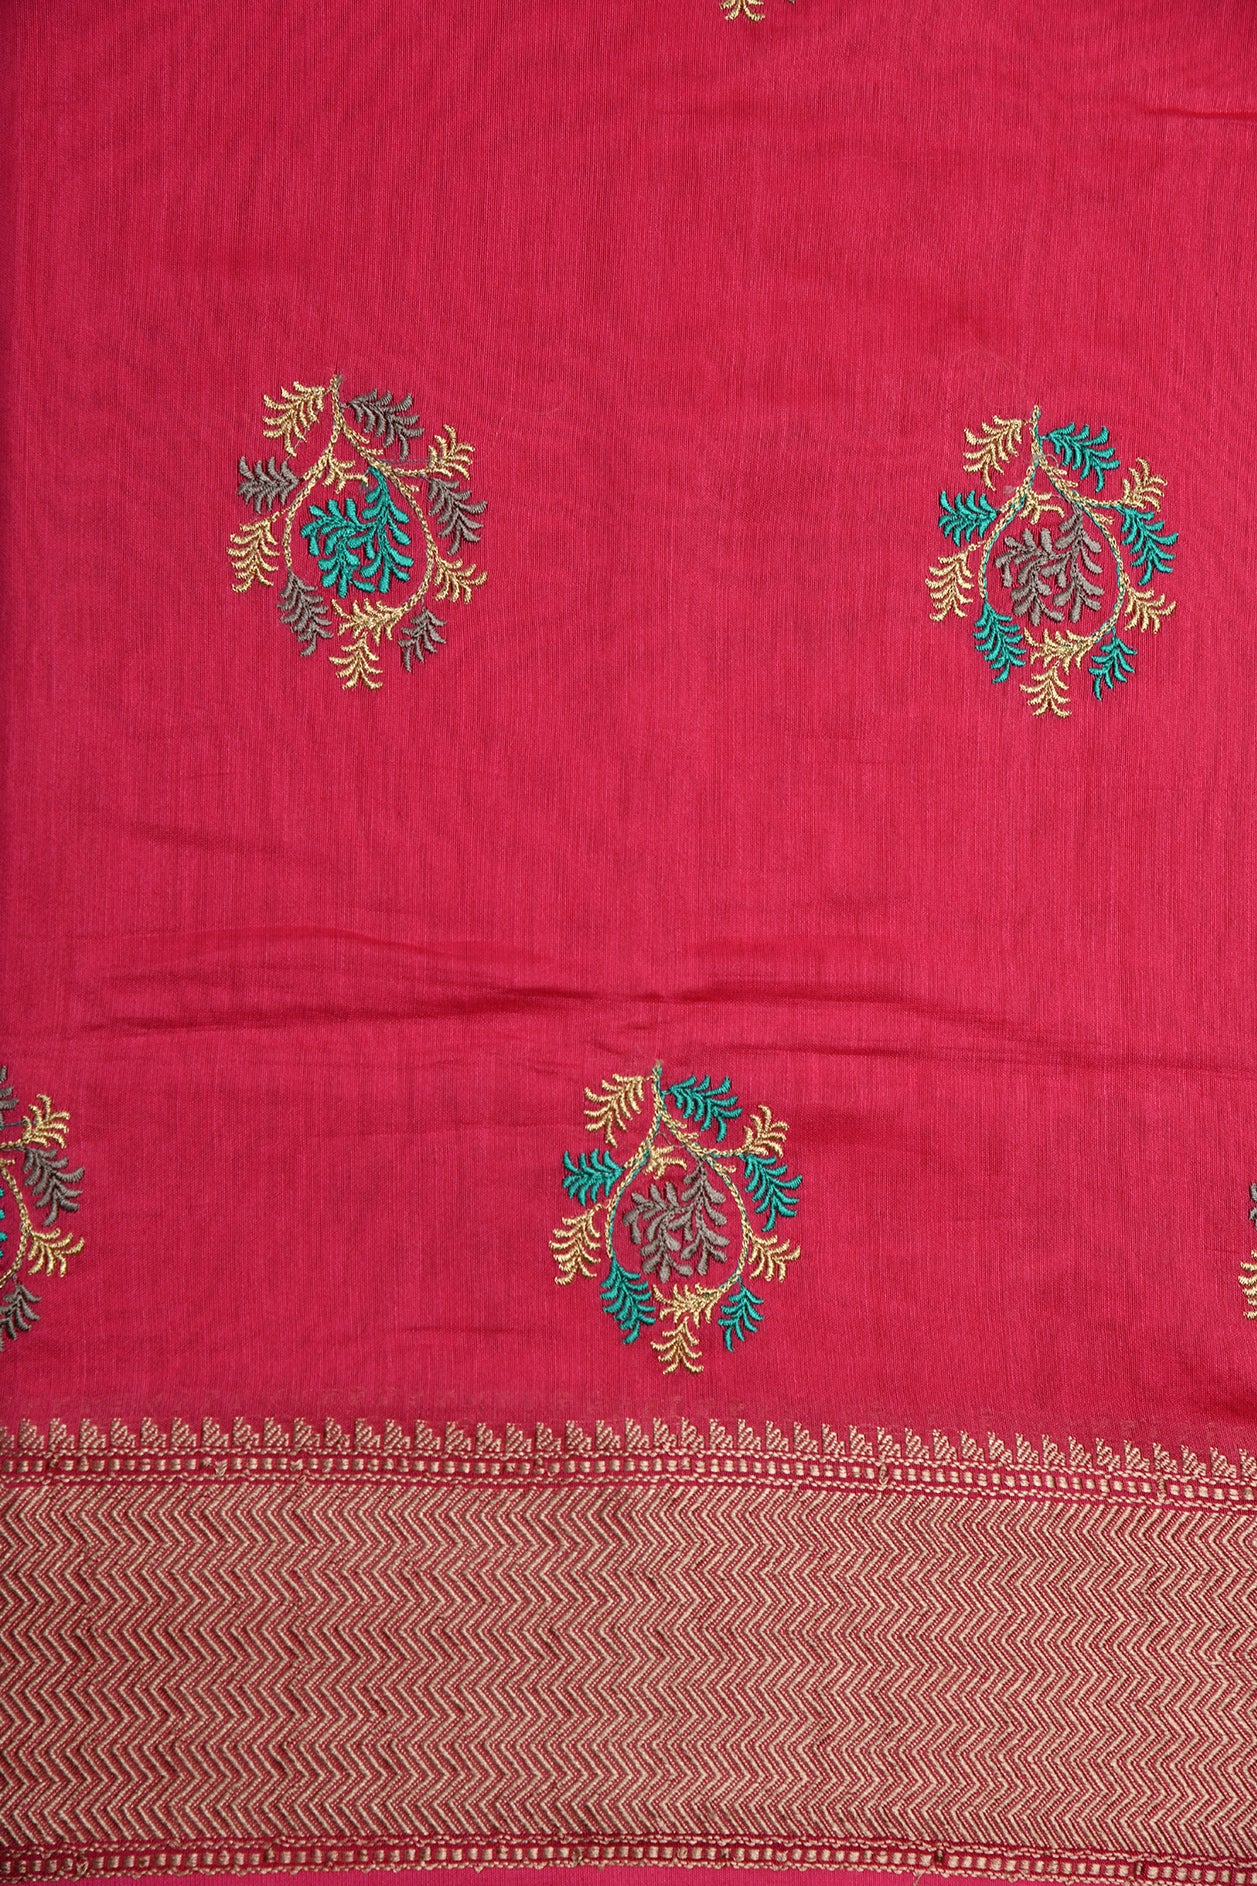 Floral Motif Embroidered Work Dark Pink Chanderi Saree